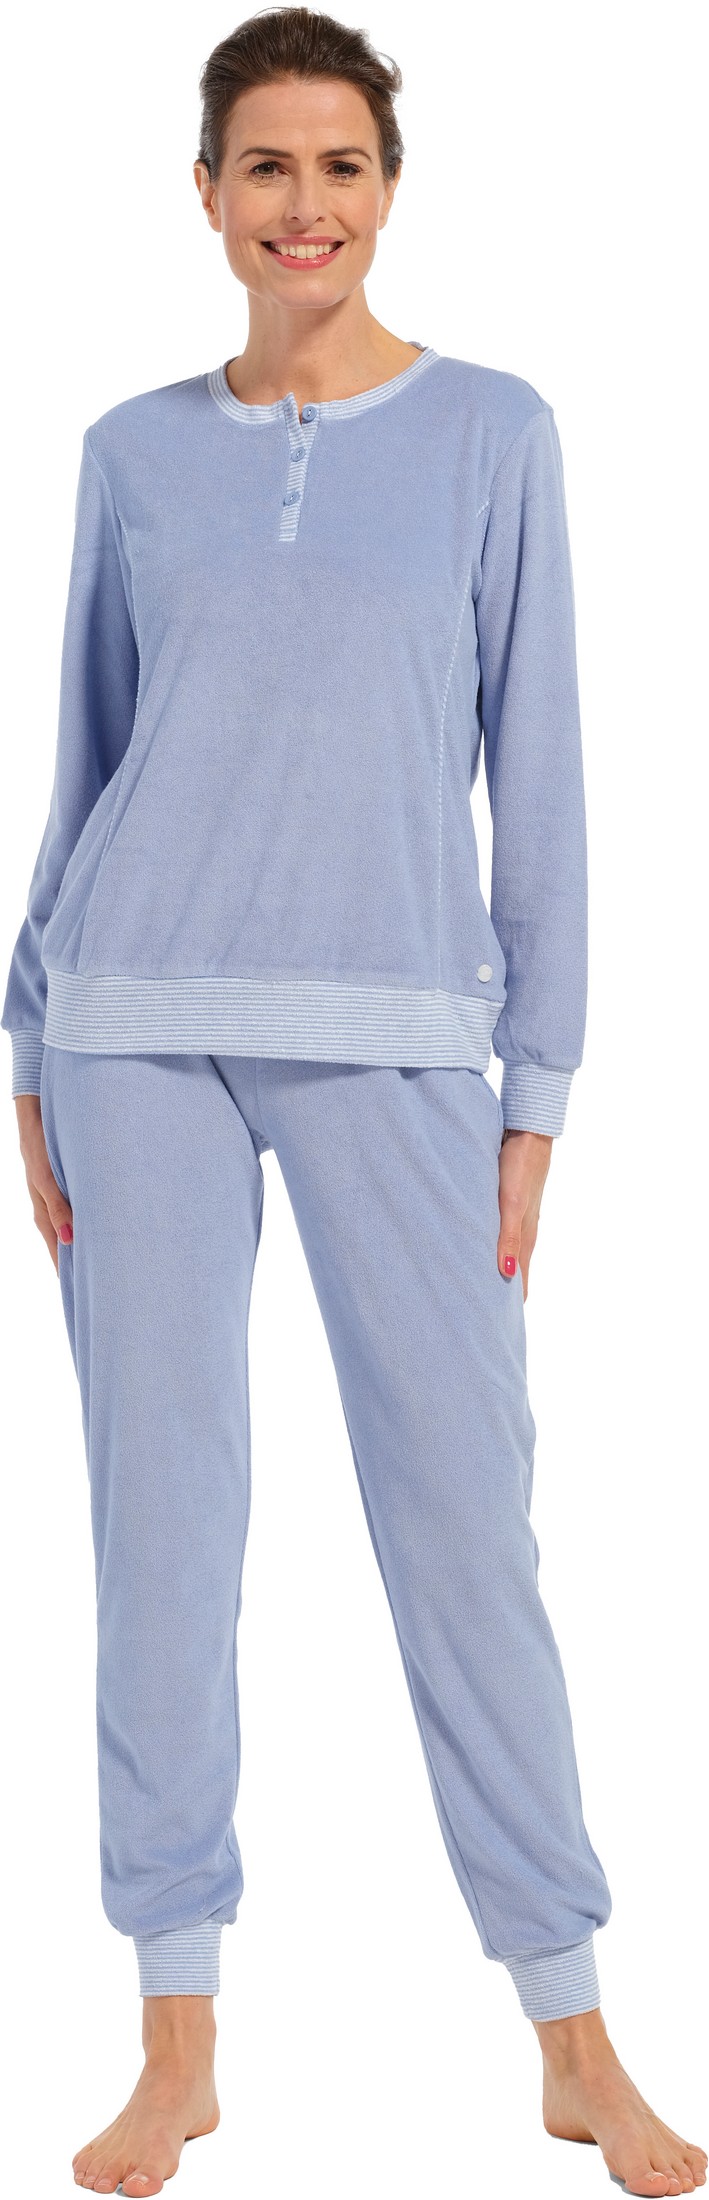 Pastunette dames badstof pyjama 20232-174-4 - Blauw - 40